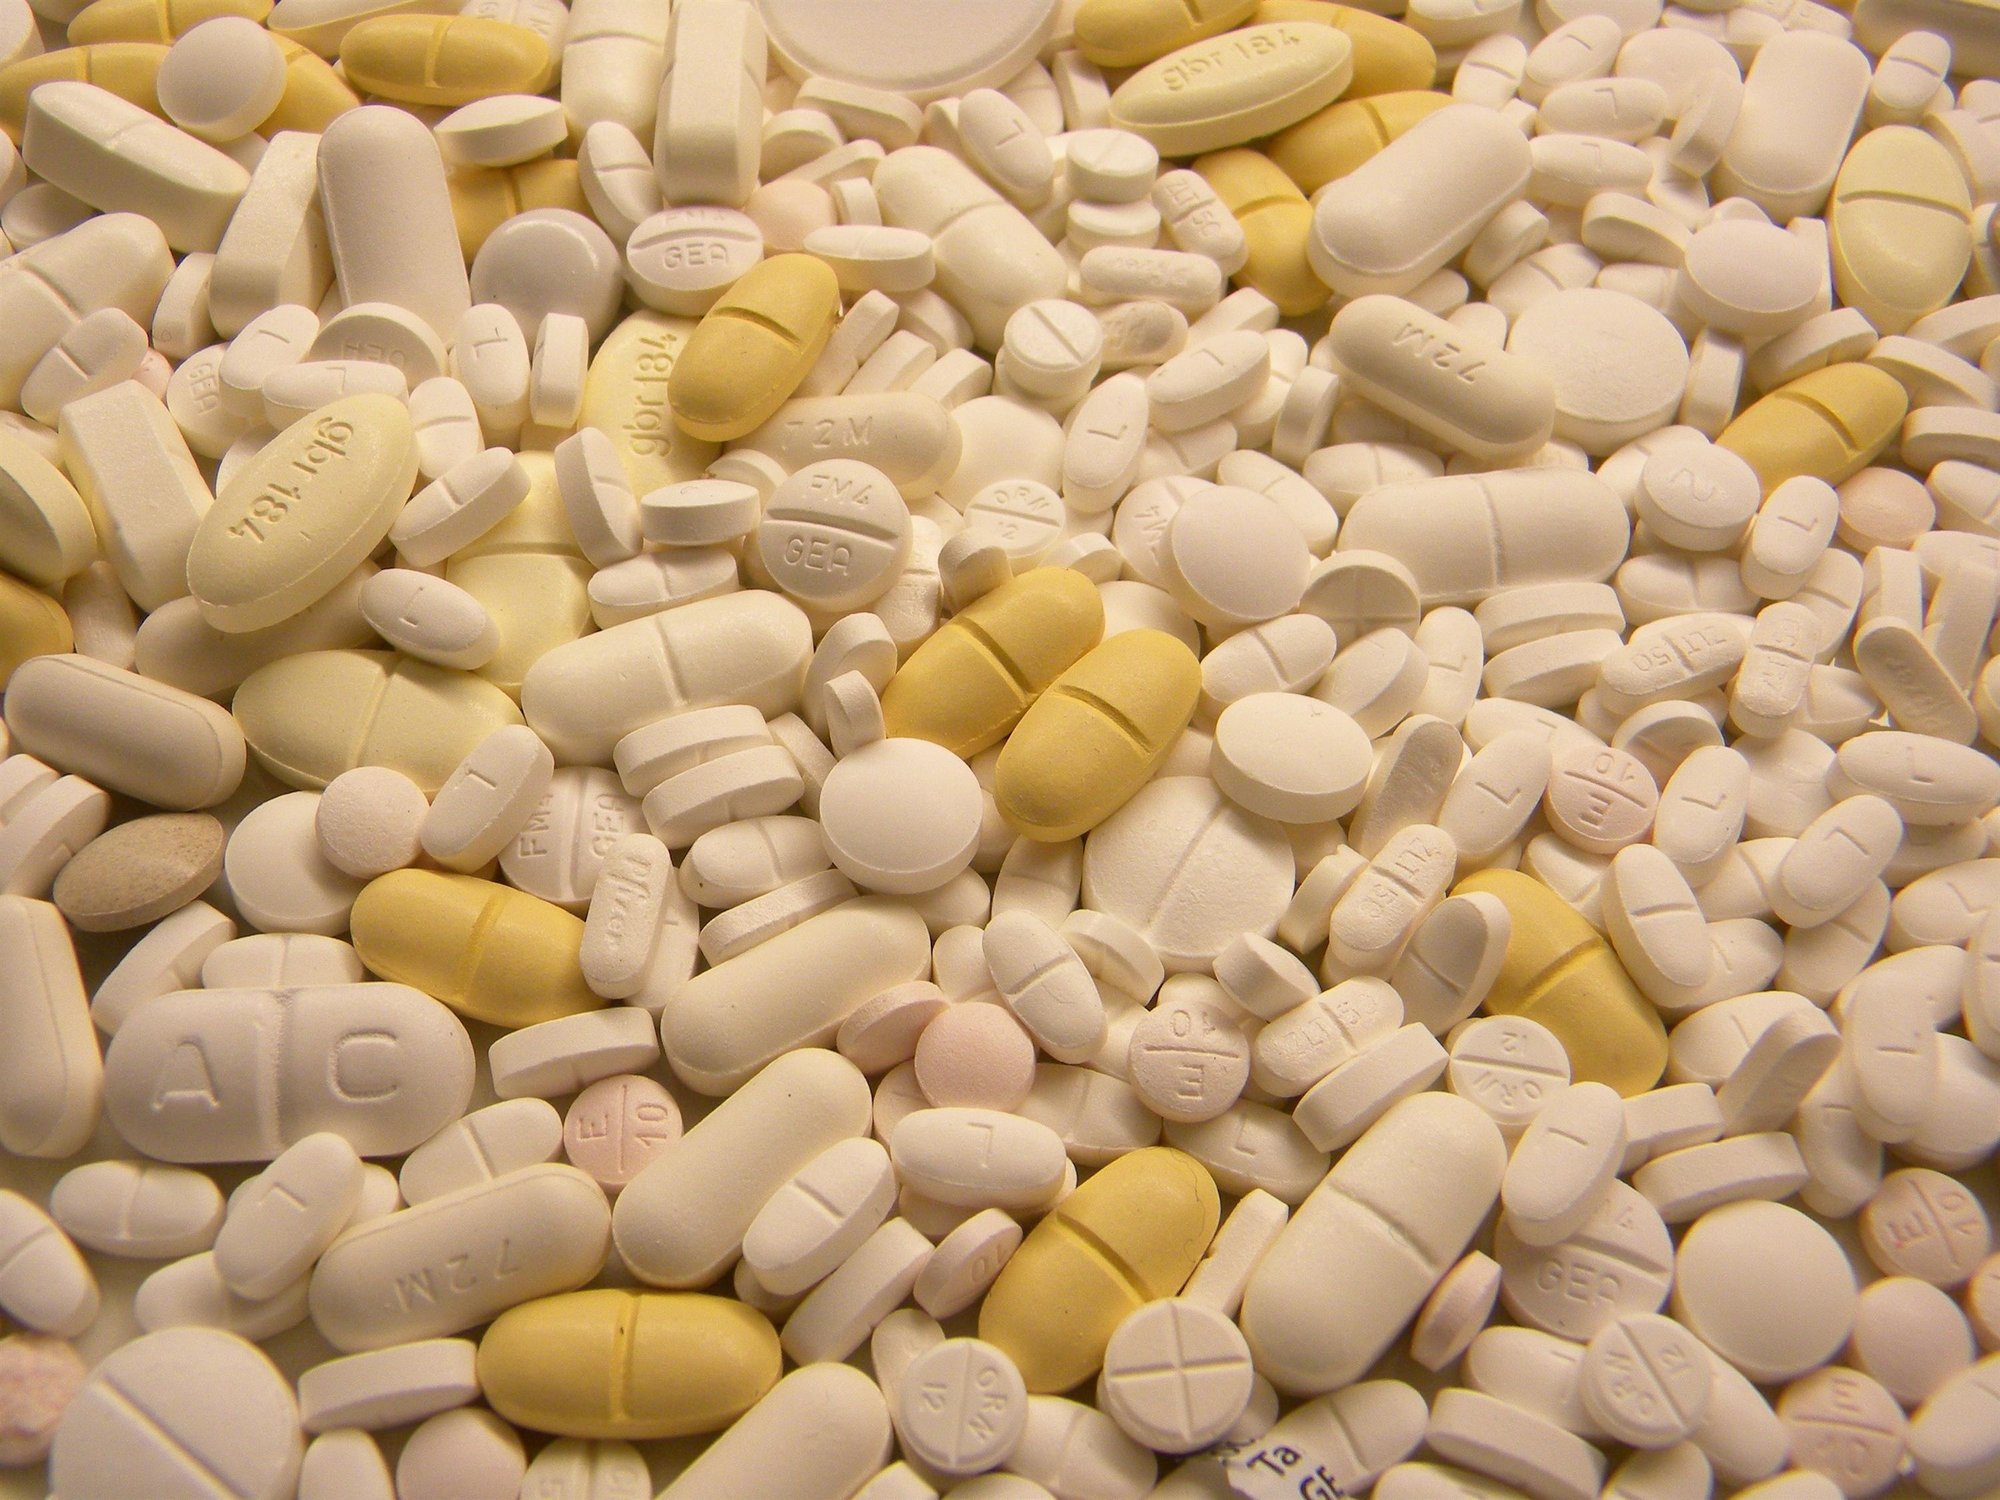 El uso correcto de los antibióticos ahorraría 25.000 muertes al año